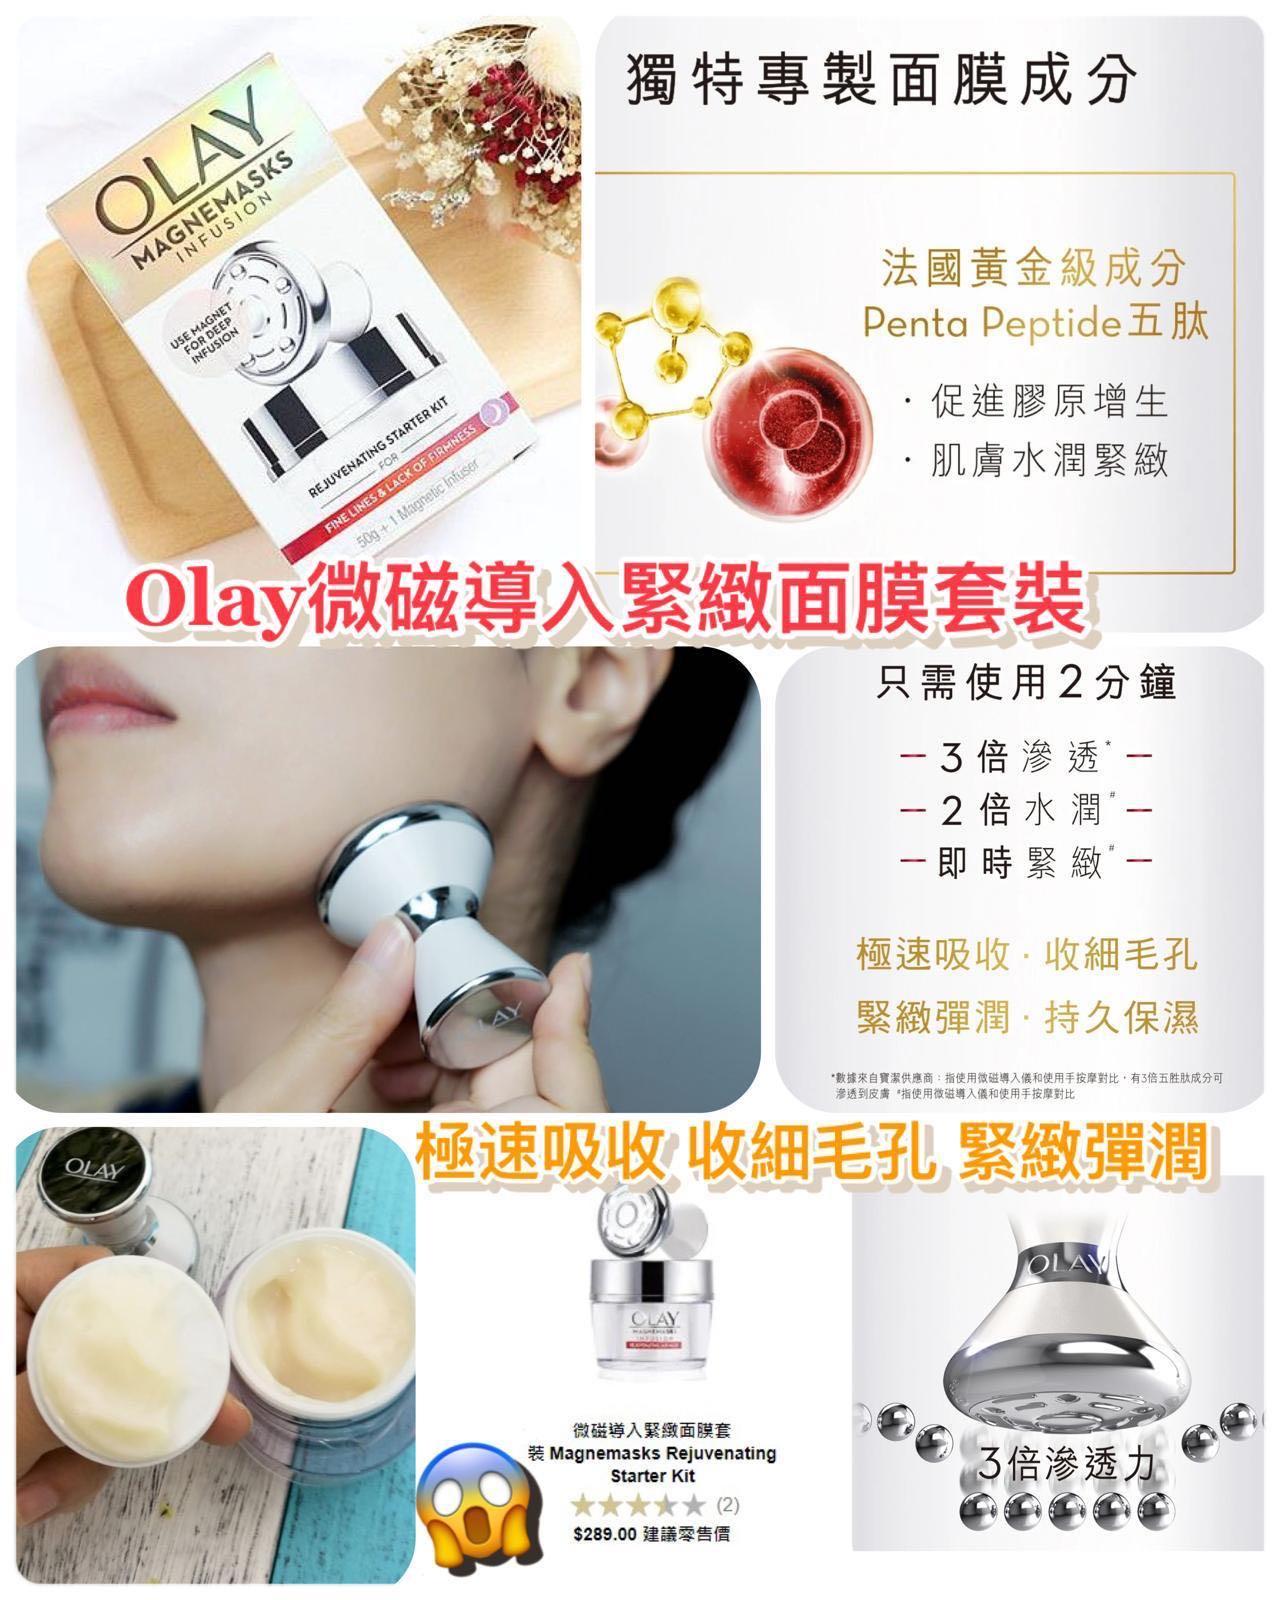 Olay微磁導入緊緻面膜套裝 美容 化妝品 皮膚護理 Carousell